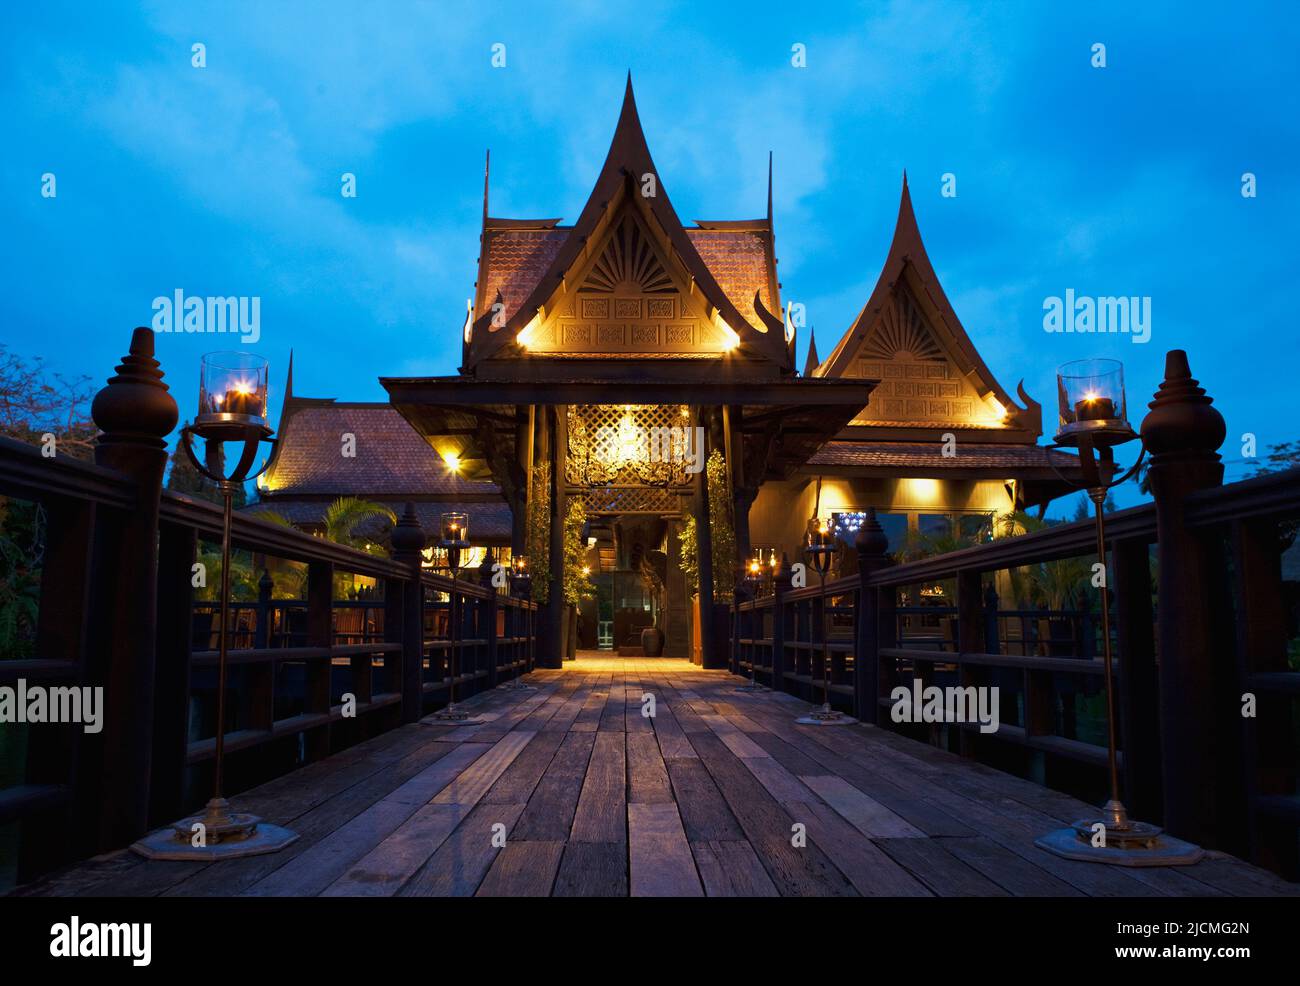 Außenansicht eines thailändischen Resortrestaurants in der Abenddämmerung. Phuket, Thailand. Stockfoto